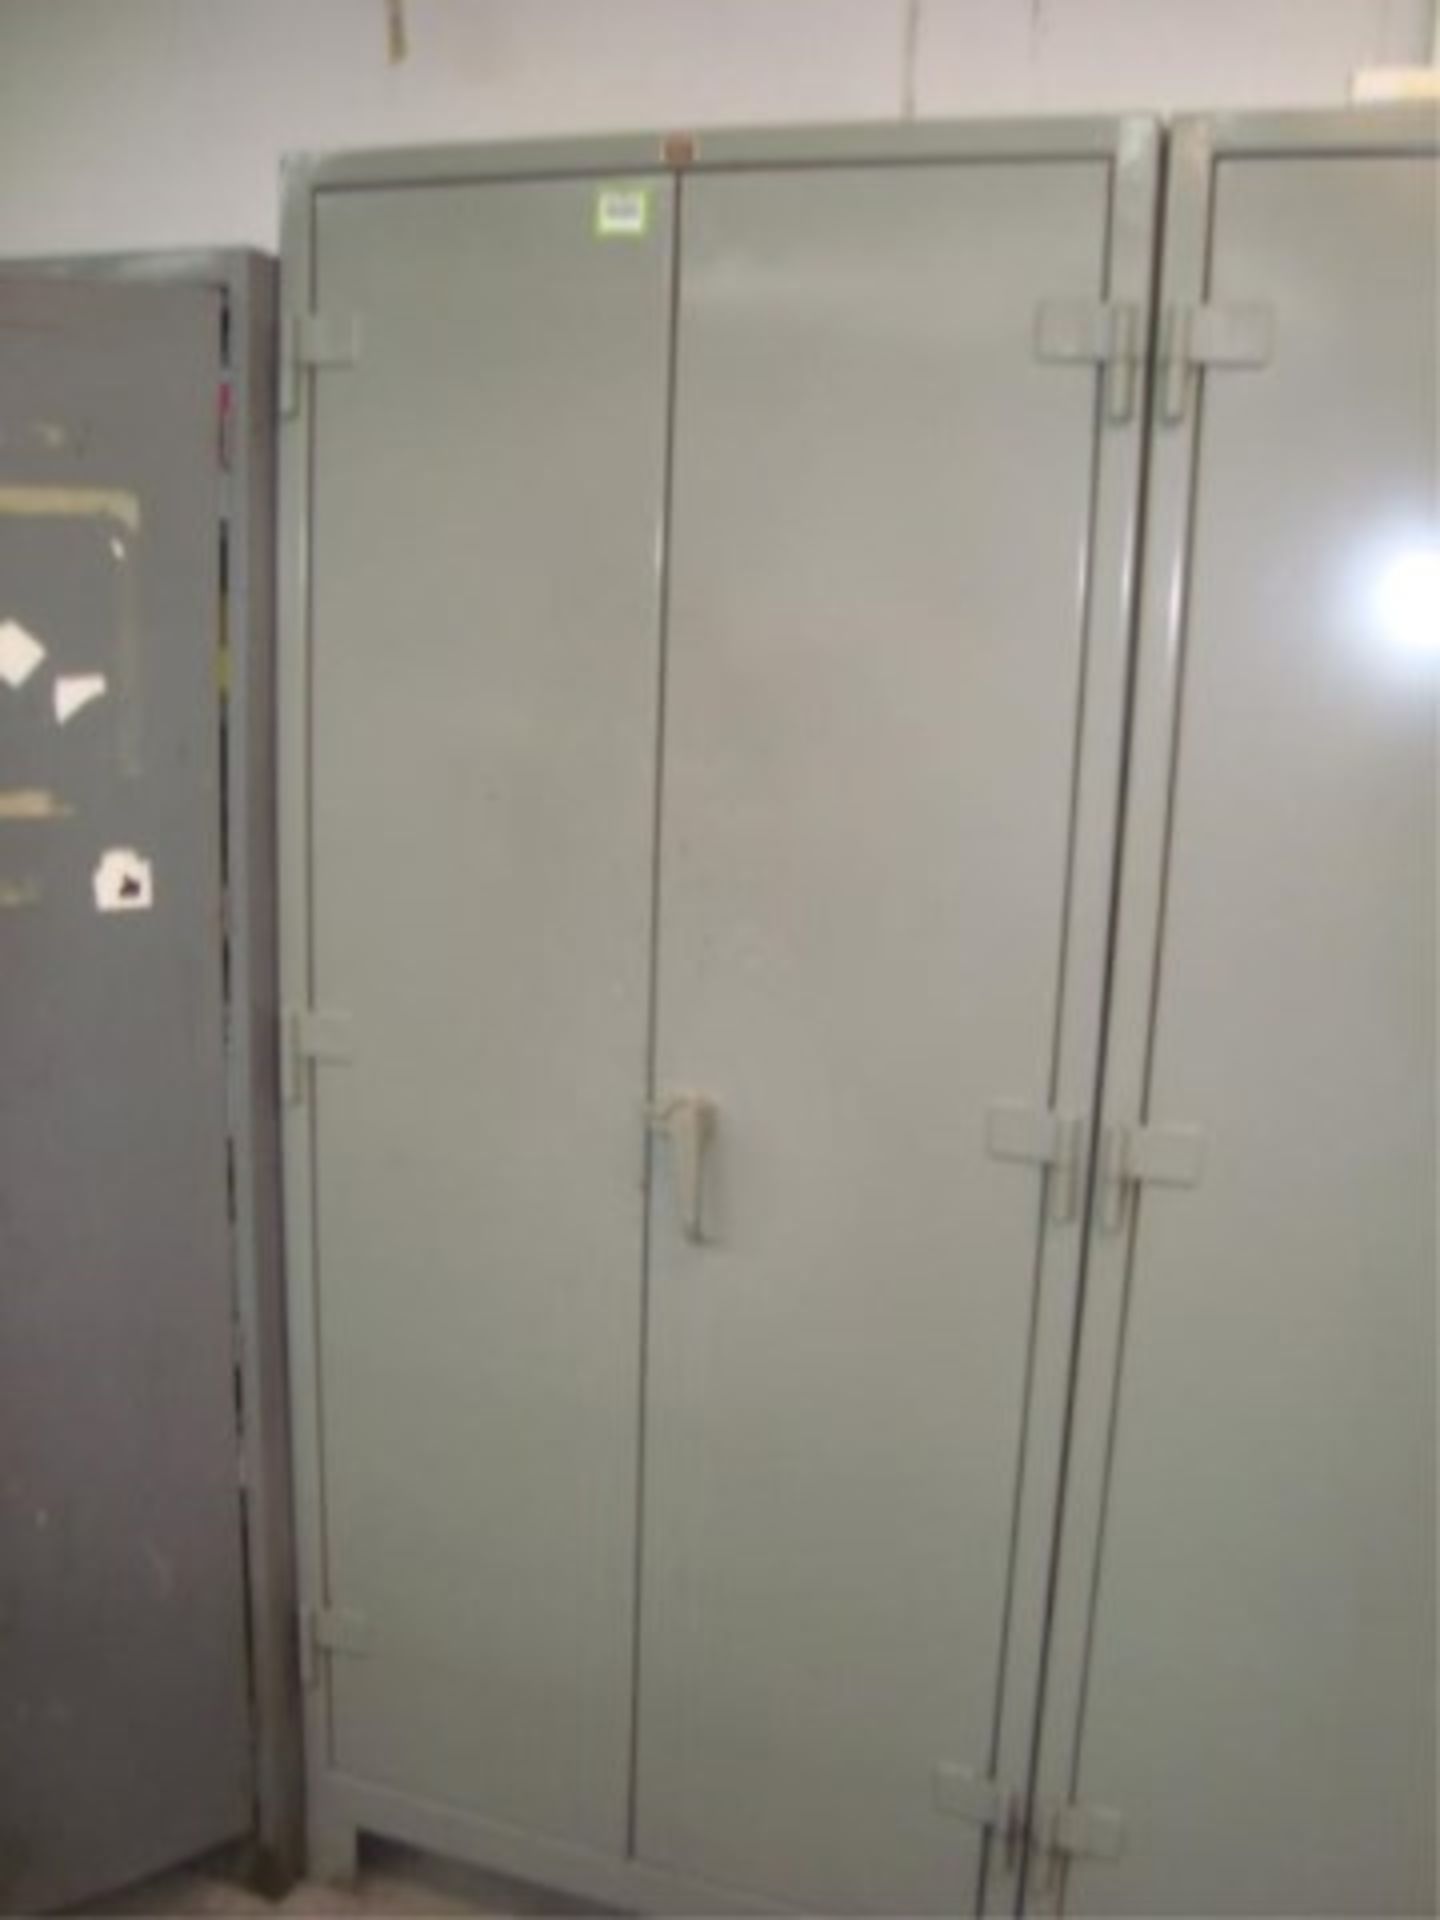 Heavy Duty 2-Door Storage Cabinet - Image 4 of 4